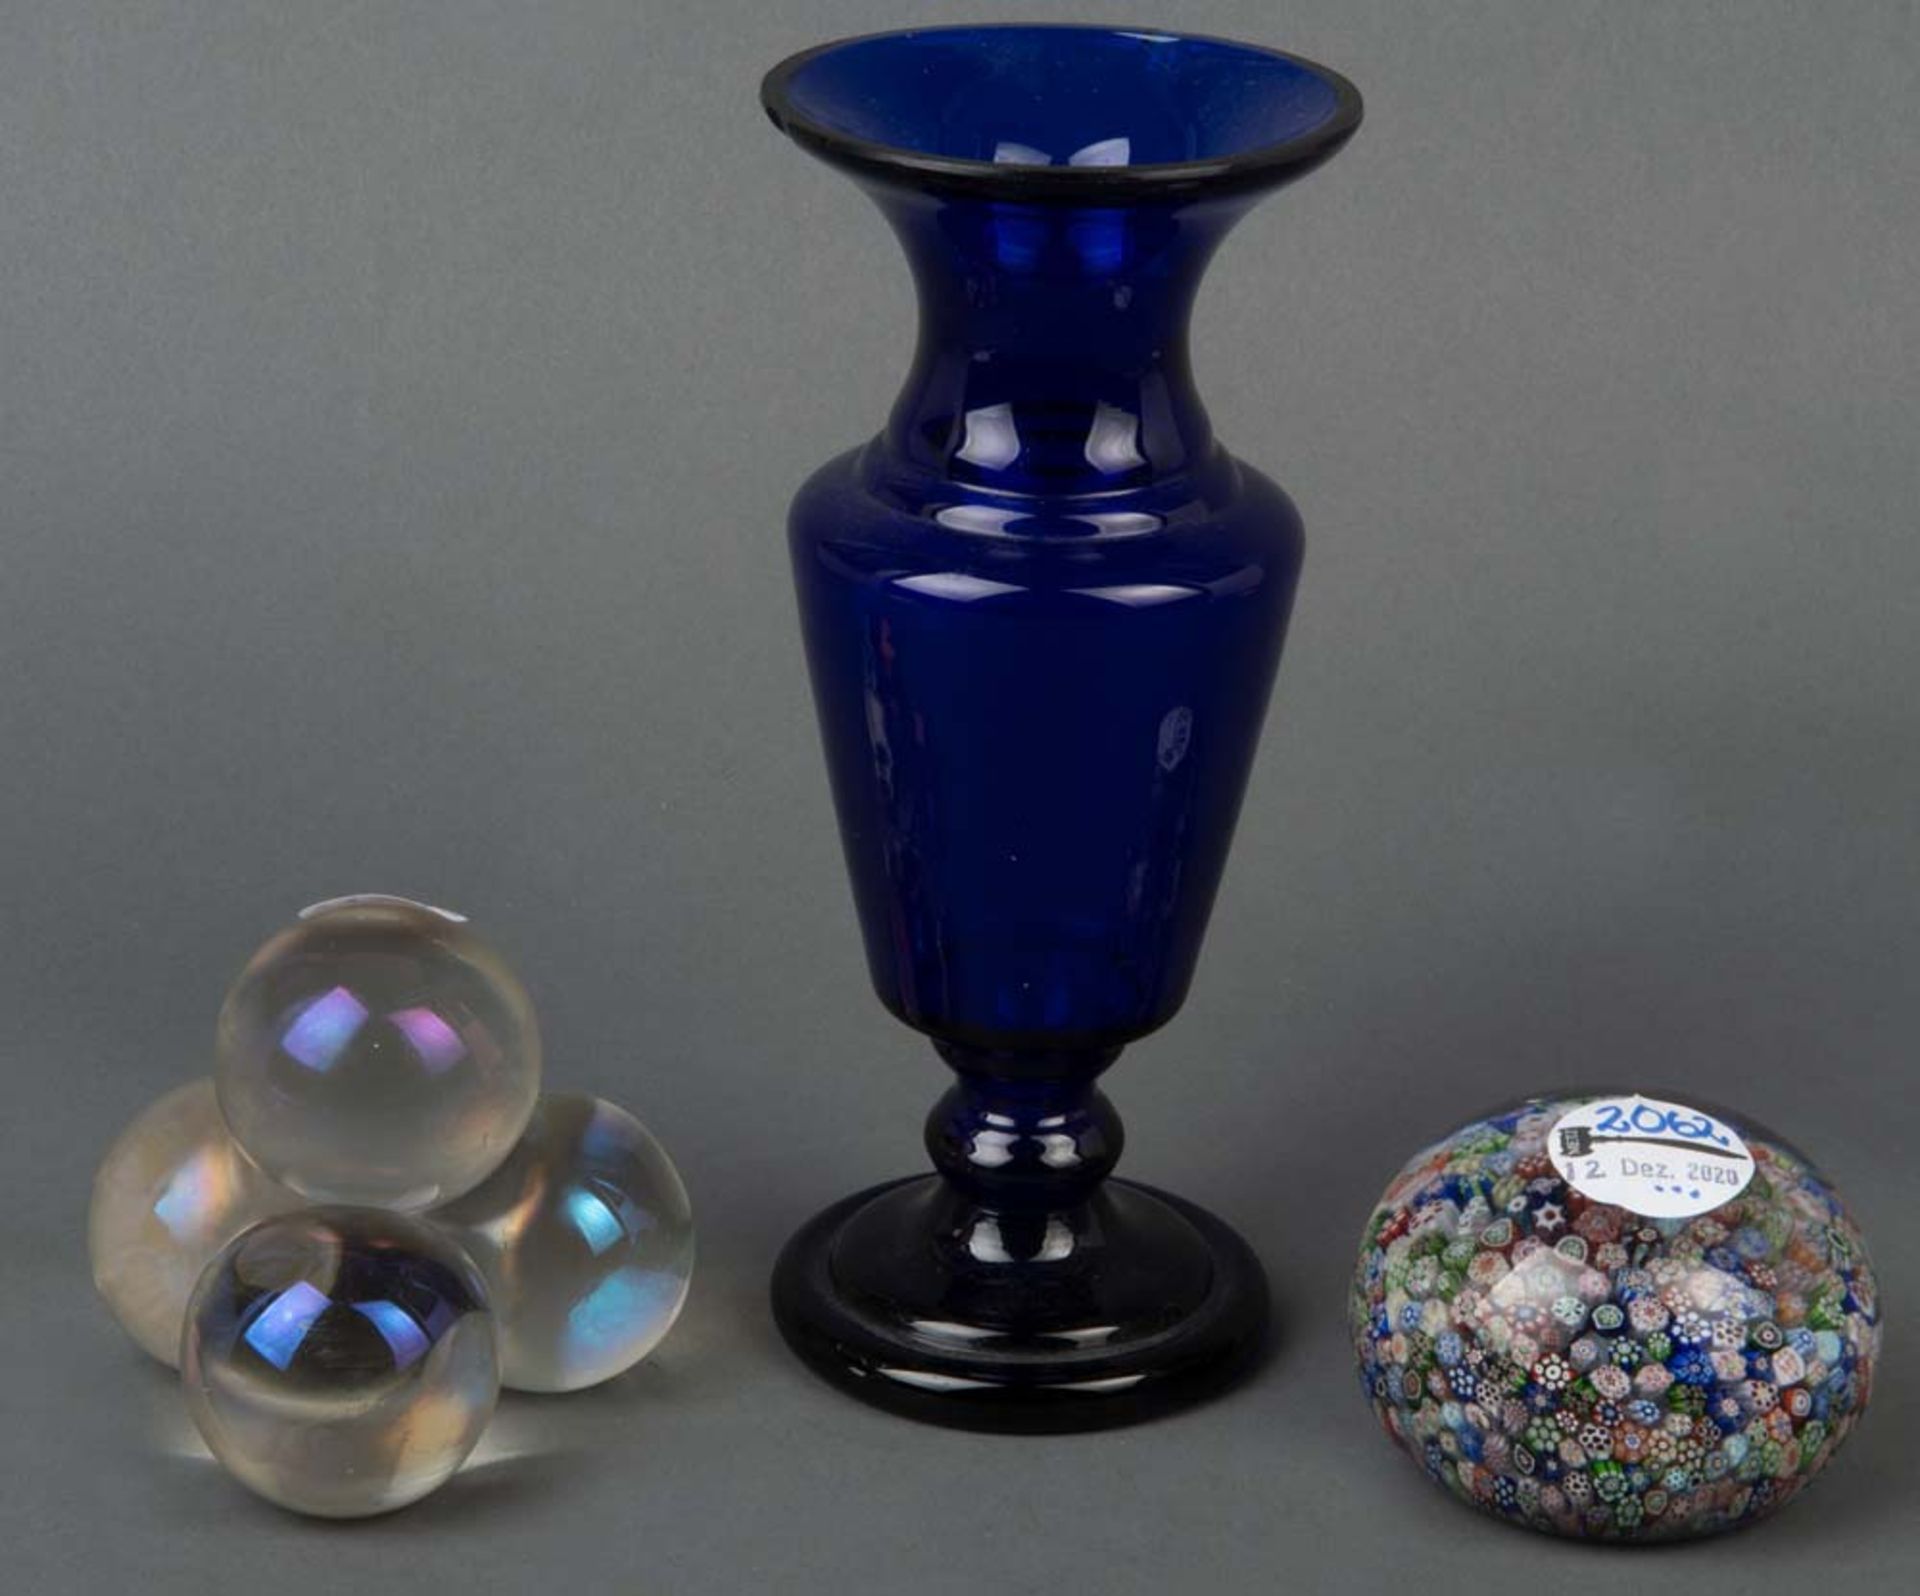 Zwei unterschiedliche Paperweight und Vase. Italien 20. Jh. Farbloses Glas, eines mit bunten Einschm